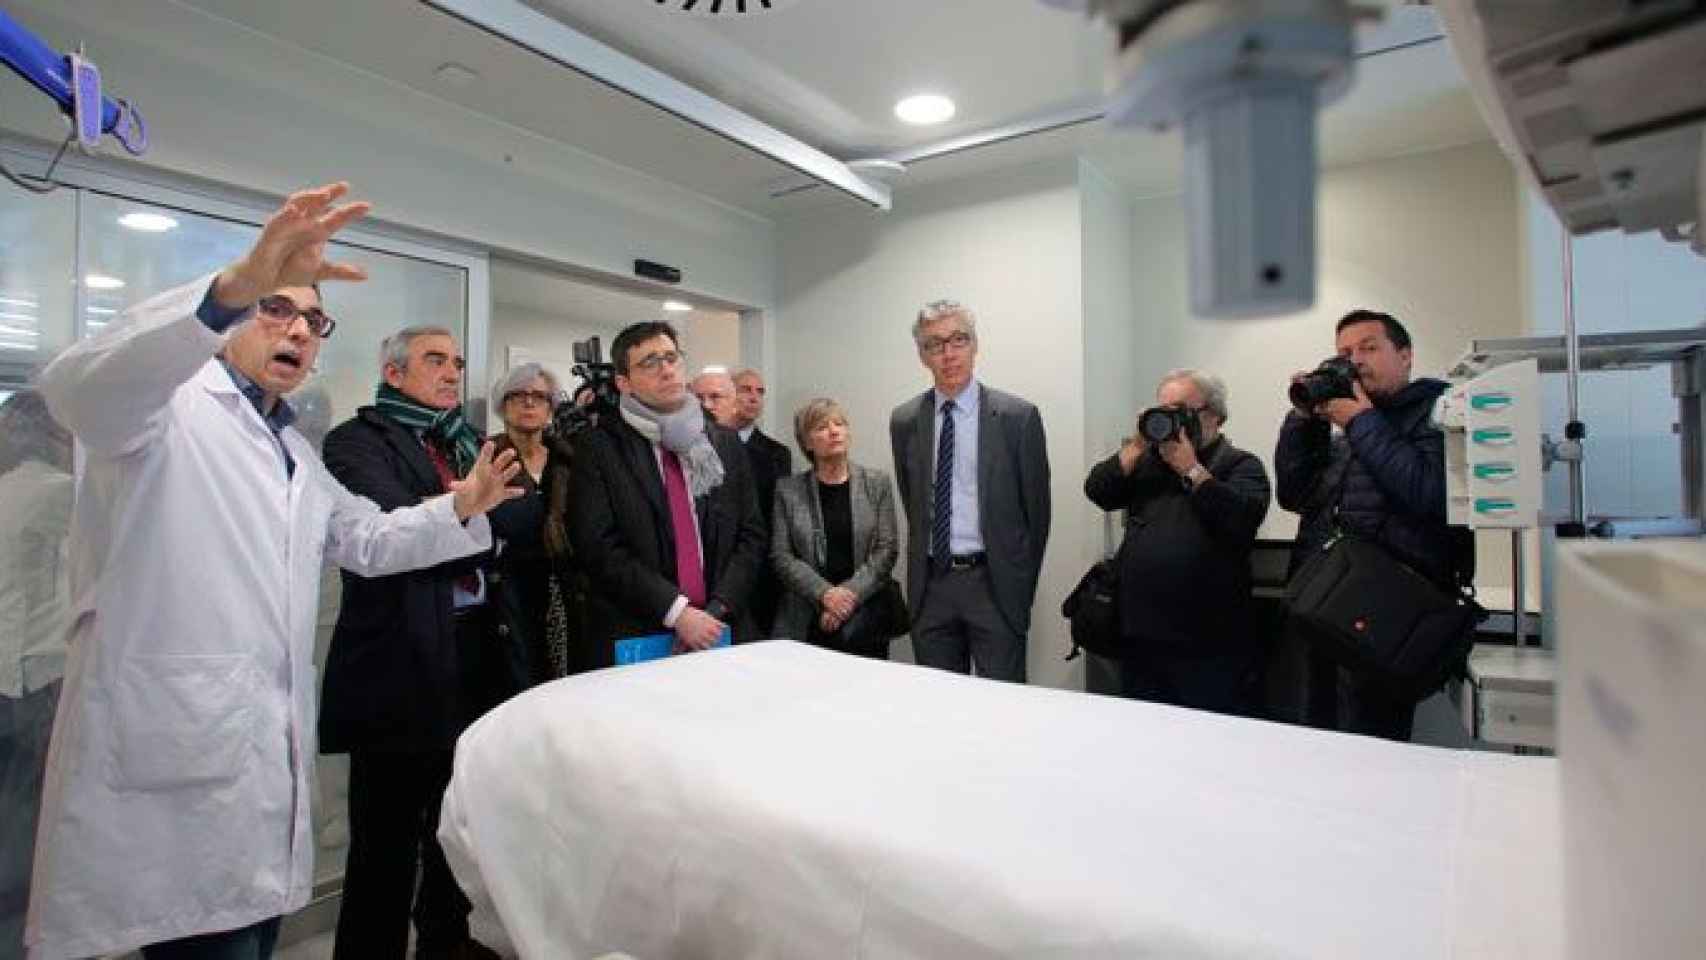 El director del CatSalut, David Elvira (c, con bufanda gris), durante una visita a un hospital catalán. Salud endosa el lío de la oxigenoterapia a los hospitales / CG